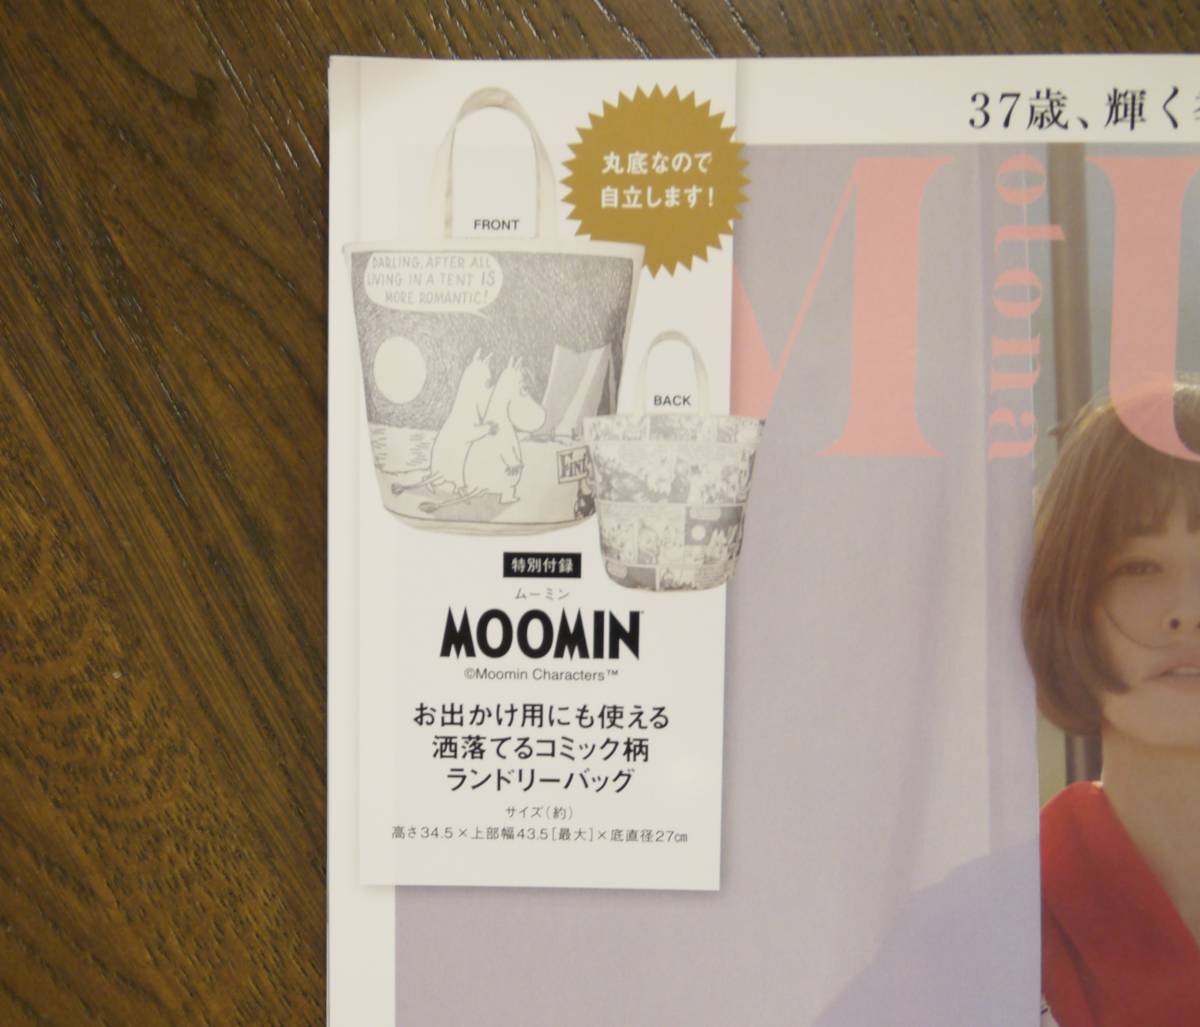 MUSE (otona) взрослый Mu z2022 год 8 месяц номер [ дополнение ]MOOMIN независимый делать! стильный прачечная сумка стоимость доставки 198 иен 